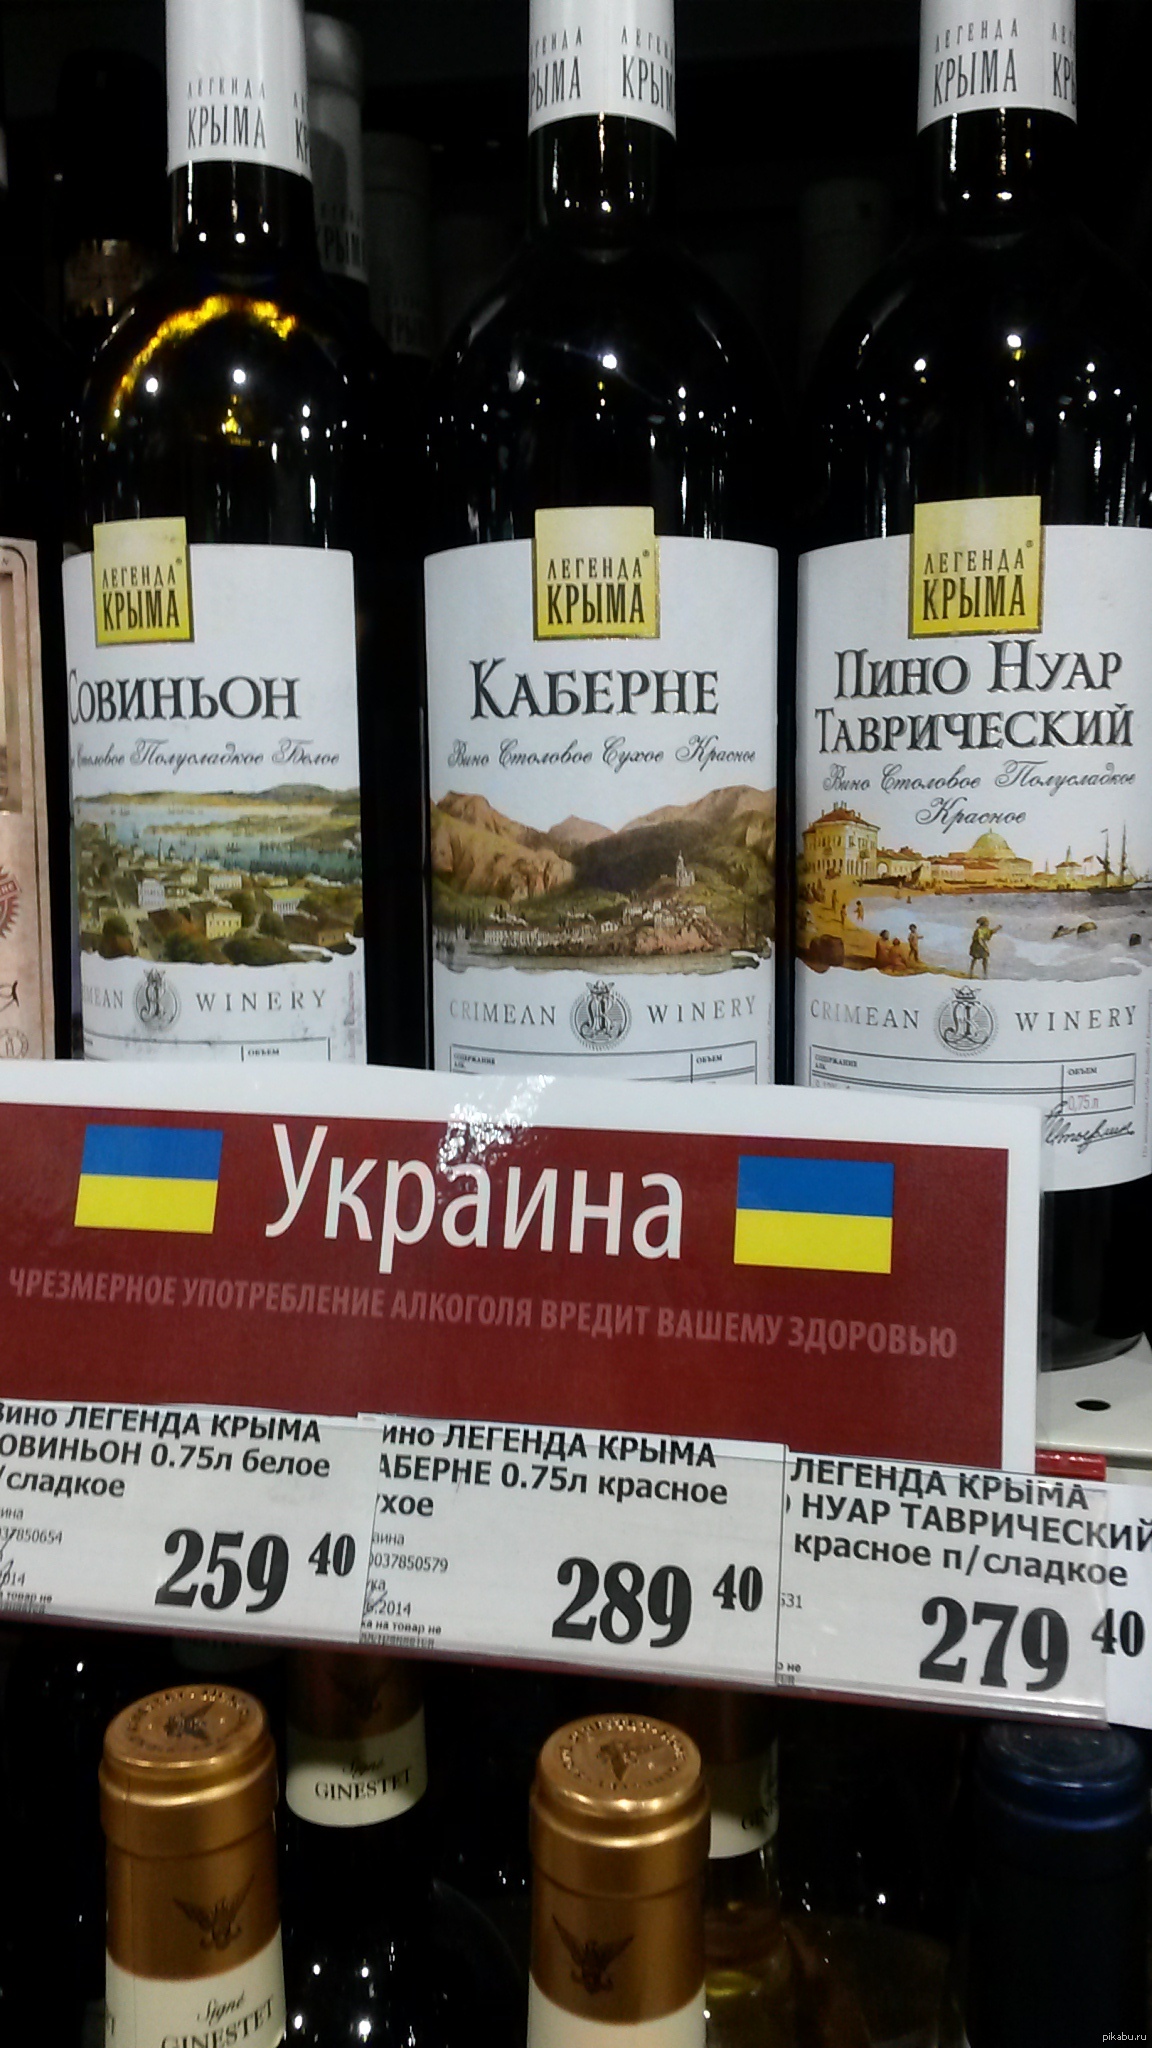 Крымское вино красное белое